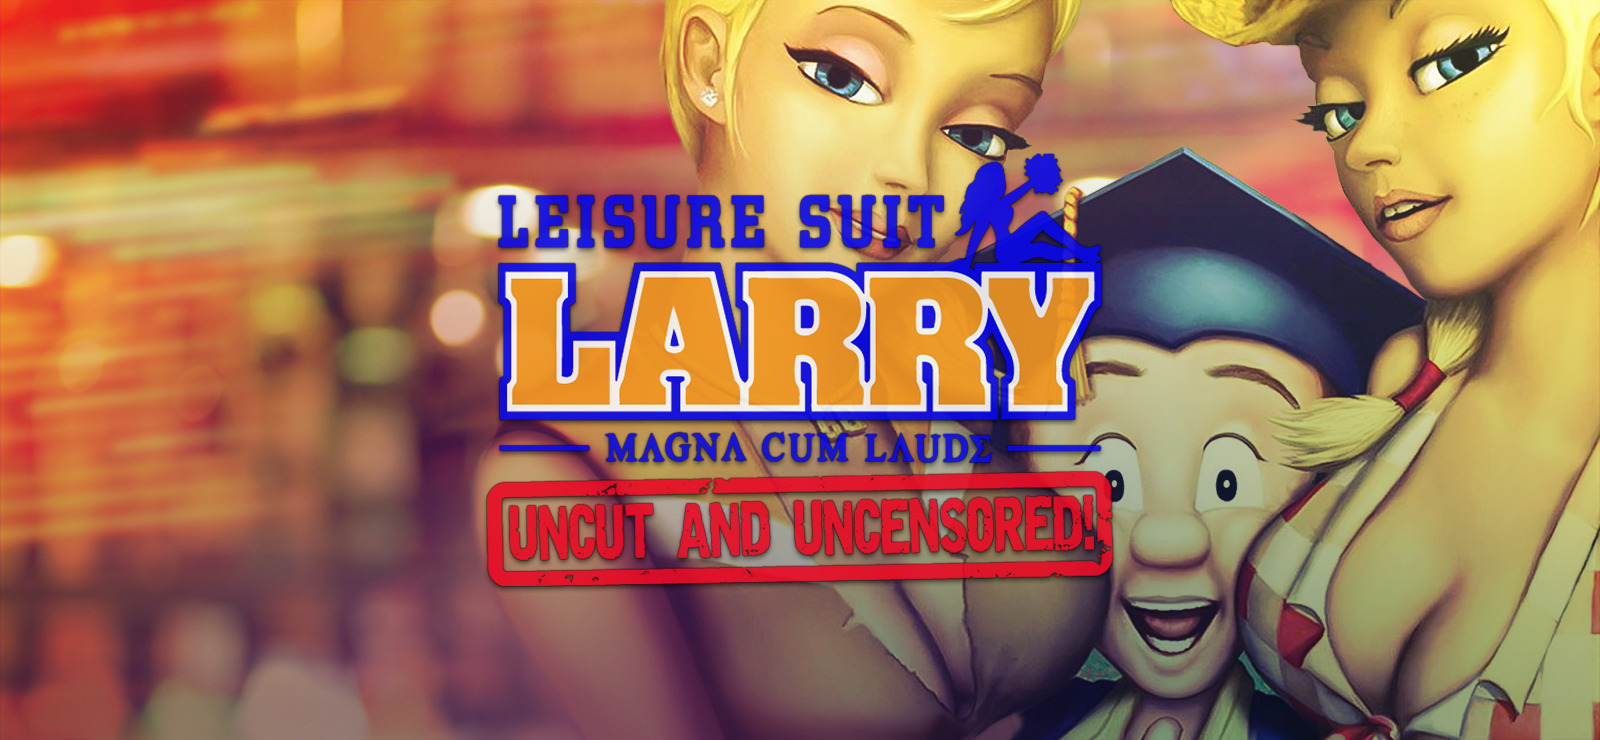 Leisure suit larry - magna cum laude uncut and uncensored